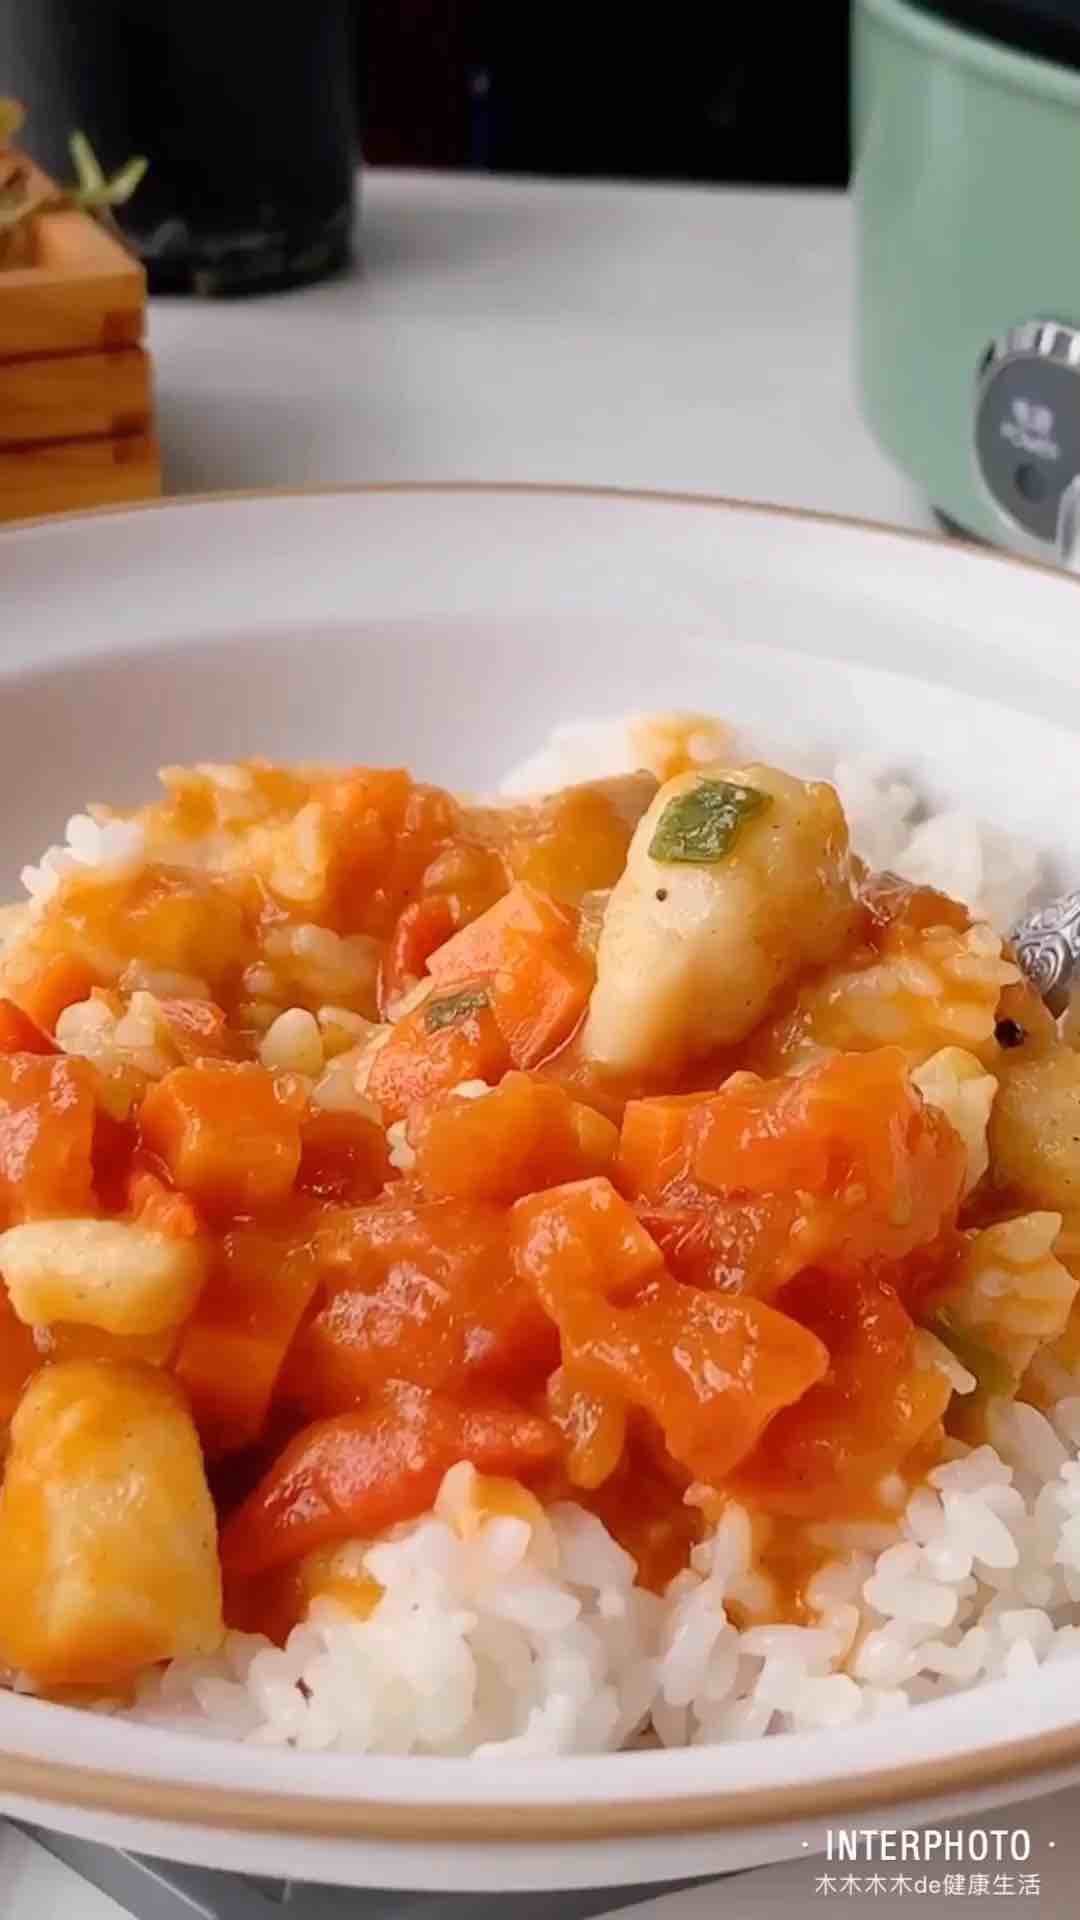 Tomato Long Li Fish Rice Bowl recipe